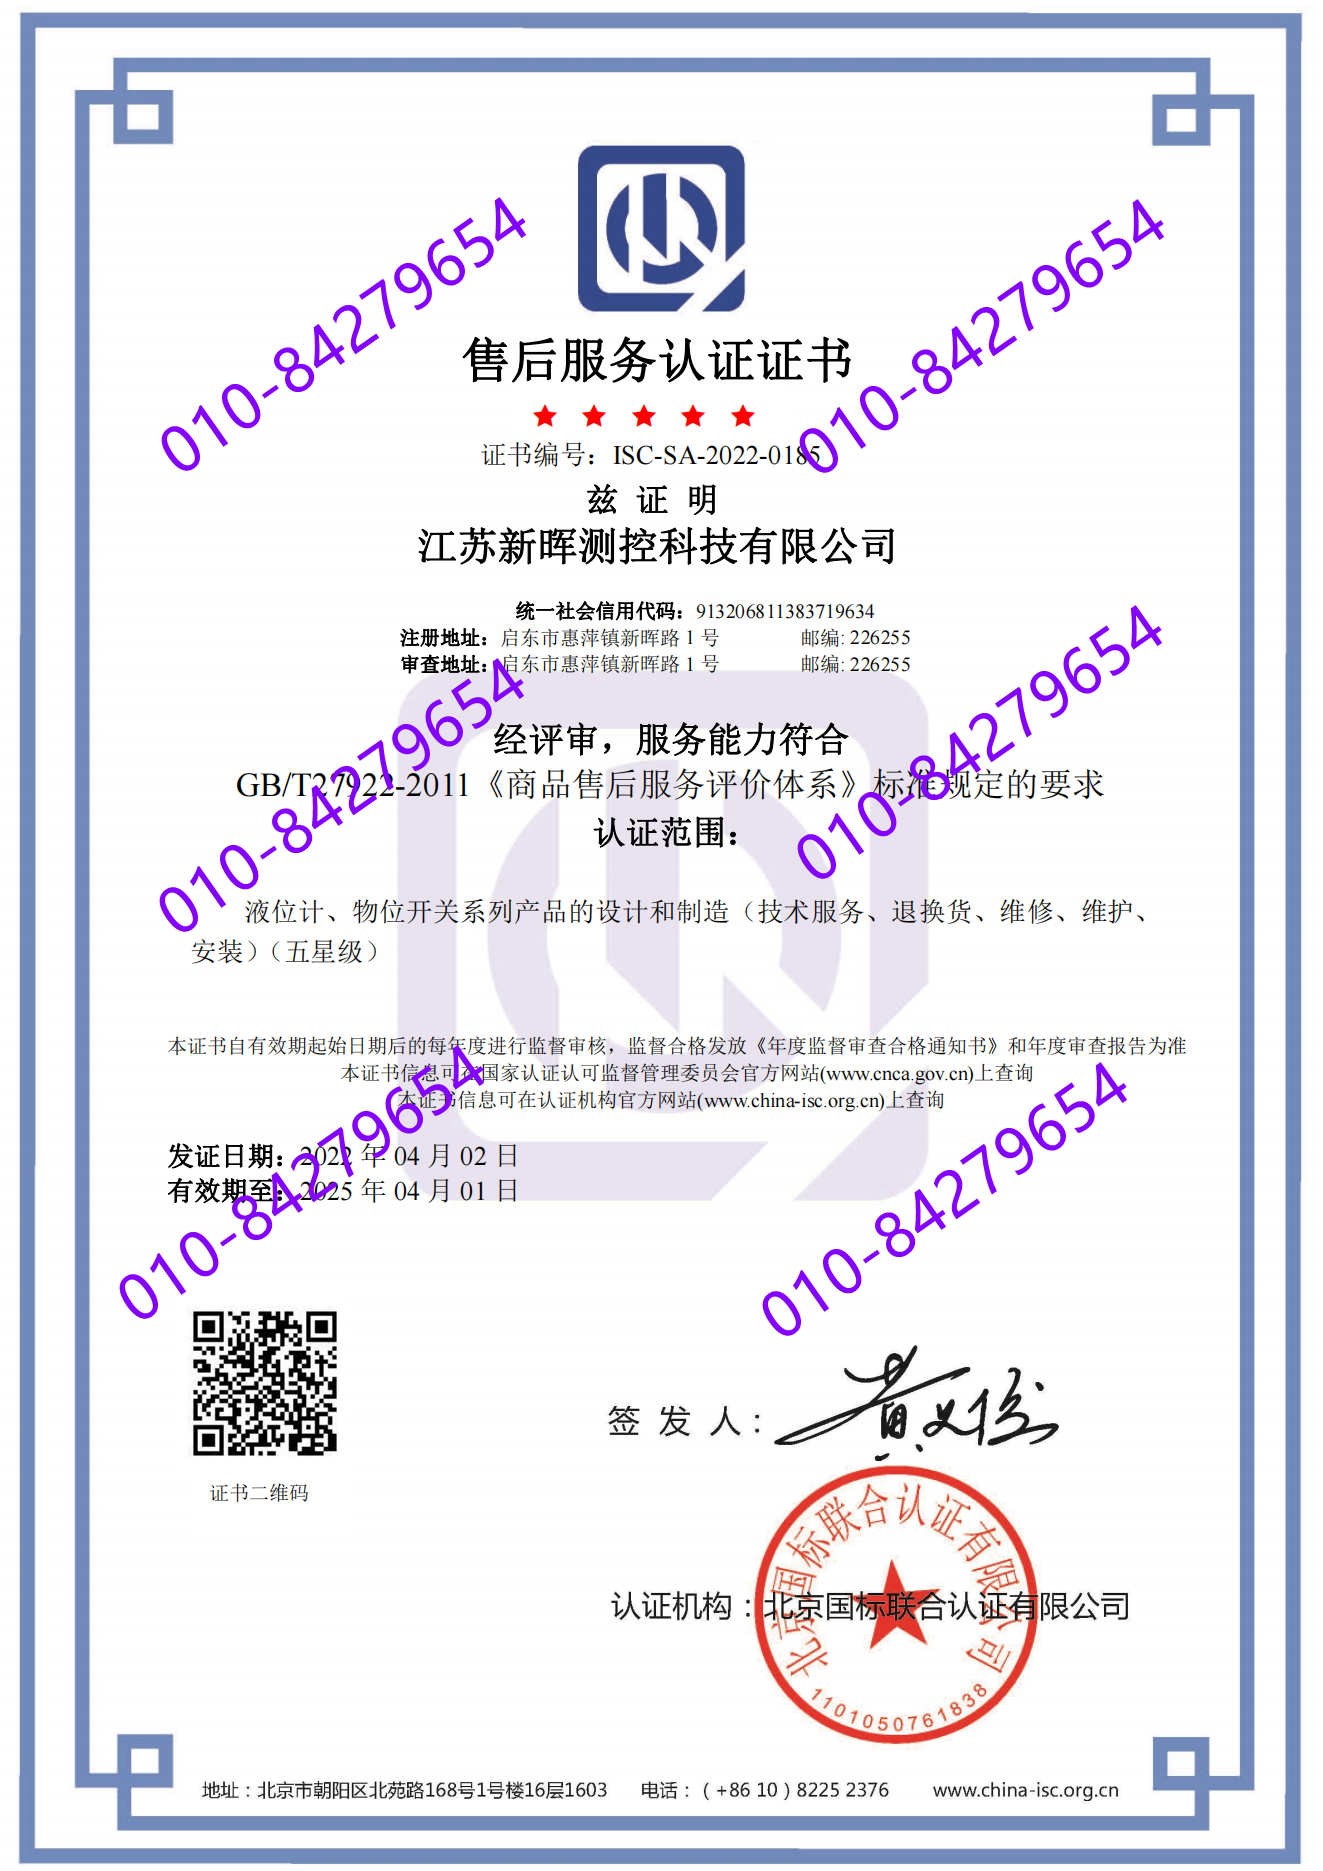 江苏新晖测控科技有限公司  喜获五星 “售后服务认证证书”